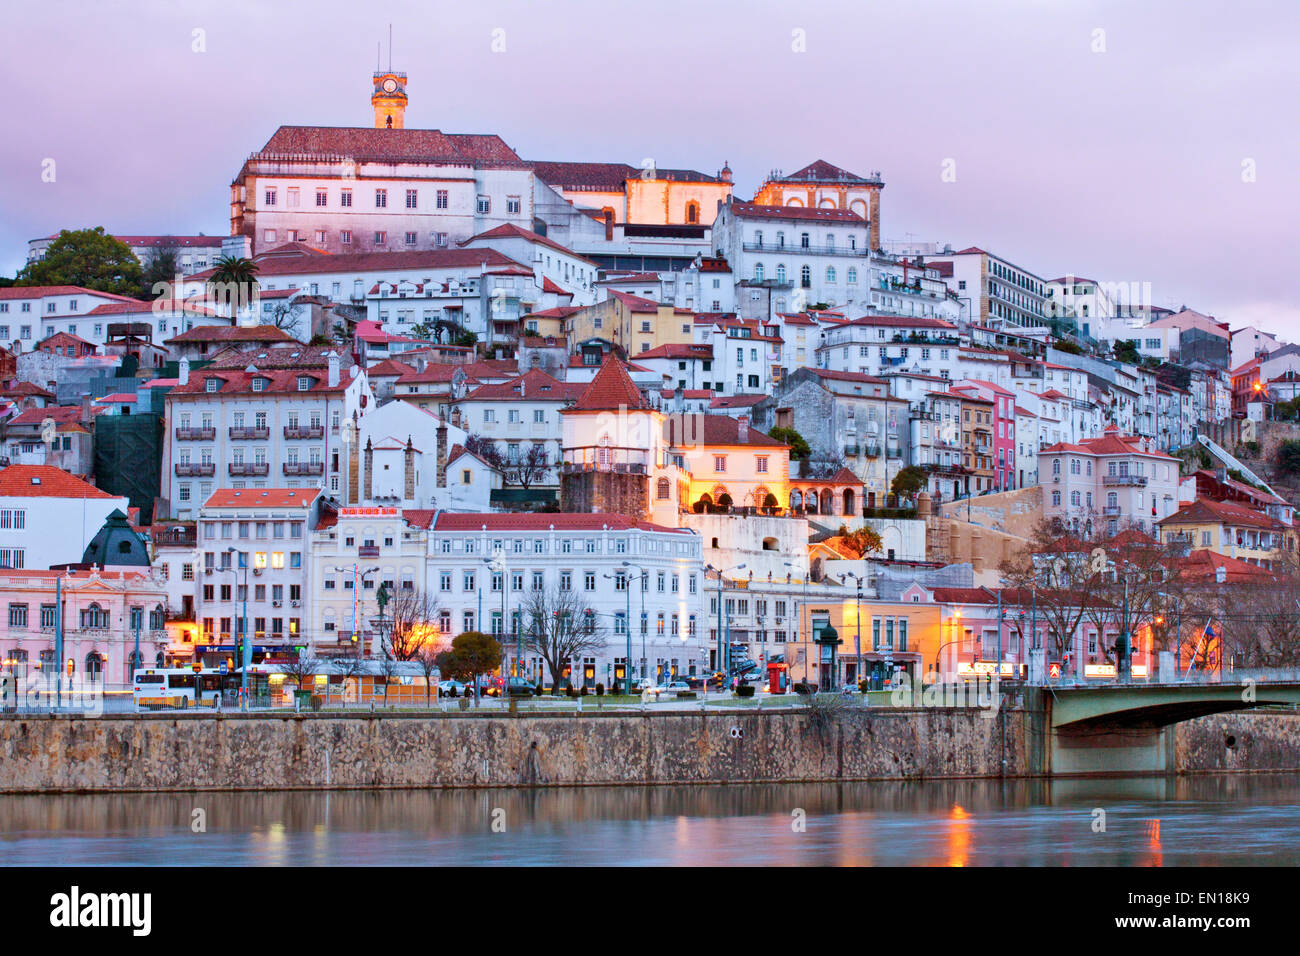 El horizonte del casco antiguo de la ciudad medieval de Coimbra, con la universidad y la ciudad alta en la cima de la colina y el río Mondego, Portugal Foto de stock